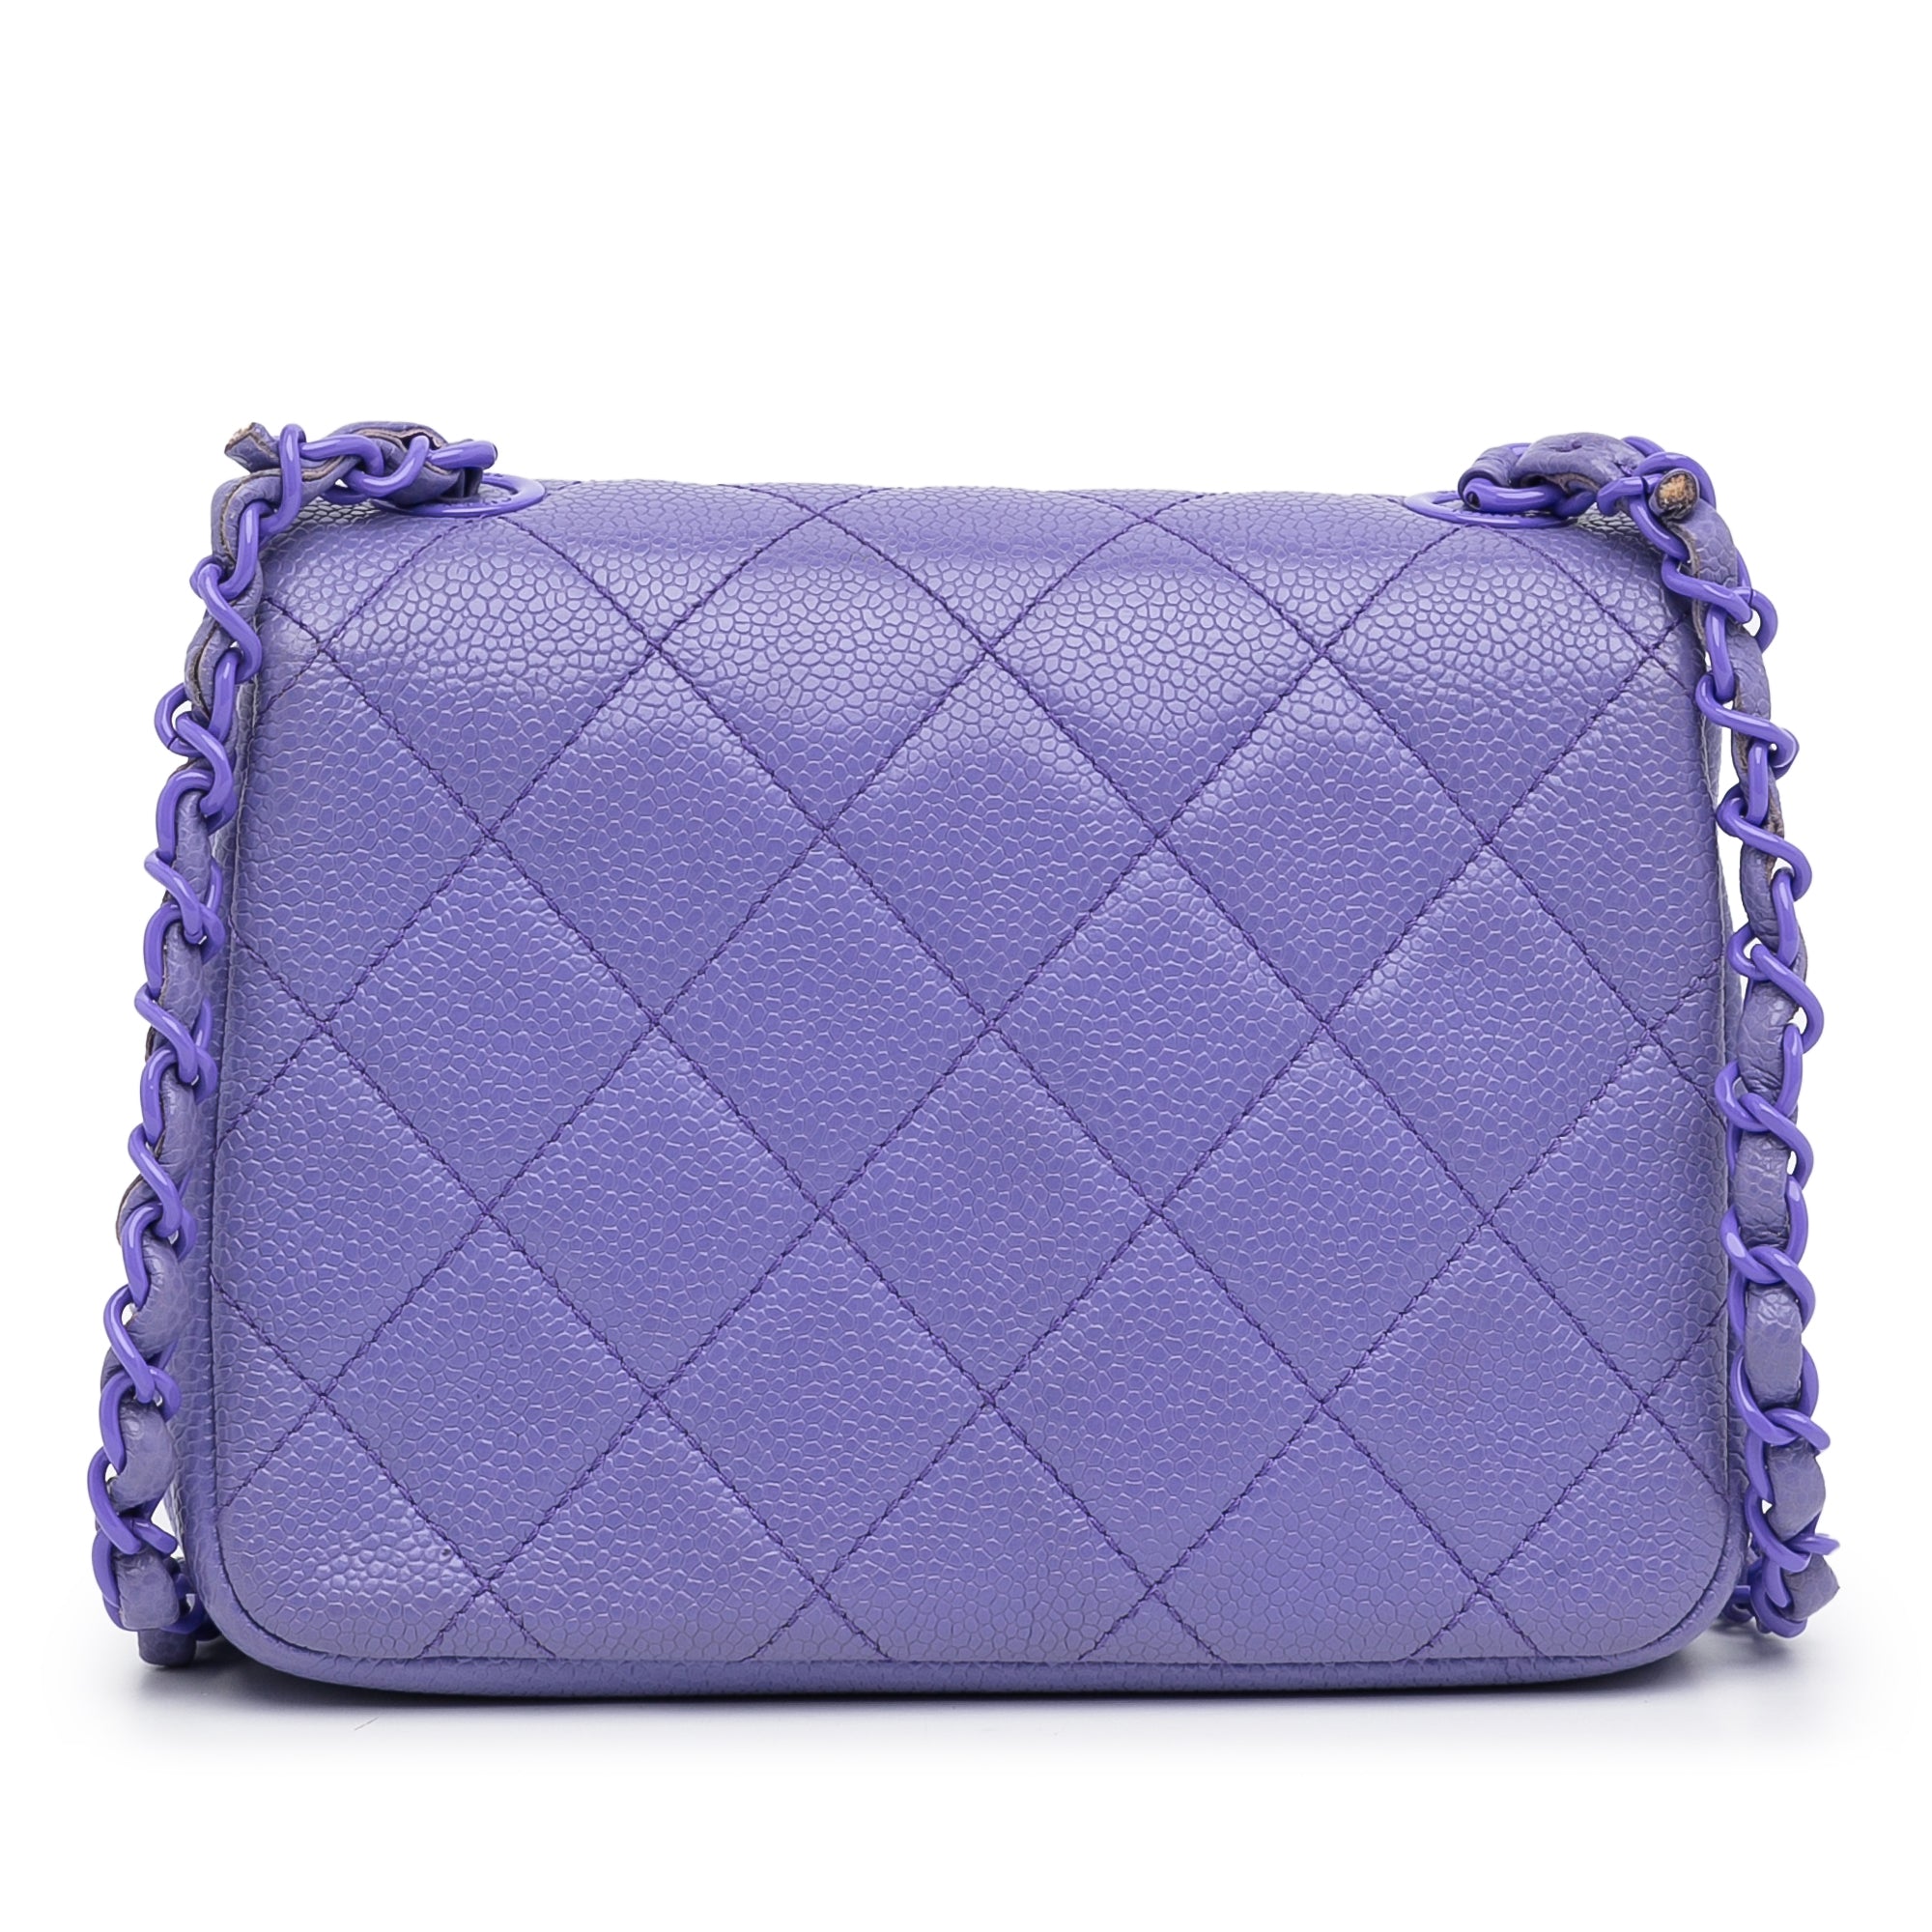 Purple Chanel Incognito Square Flap Bag